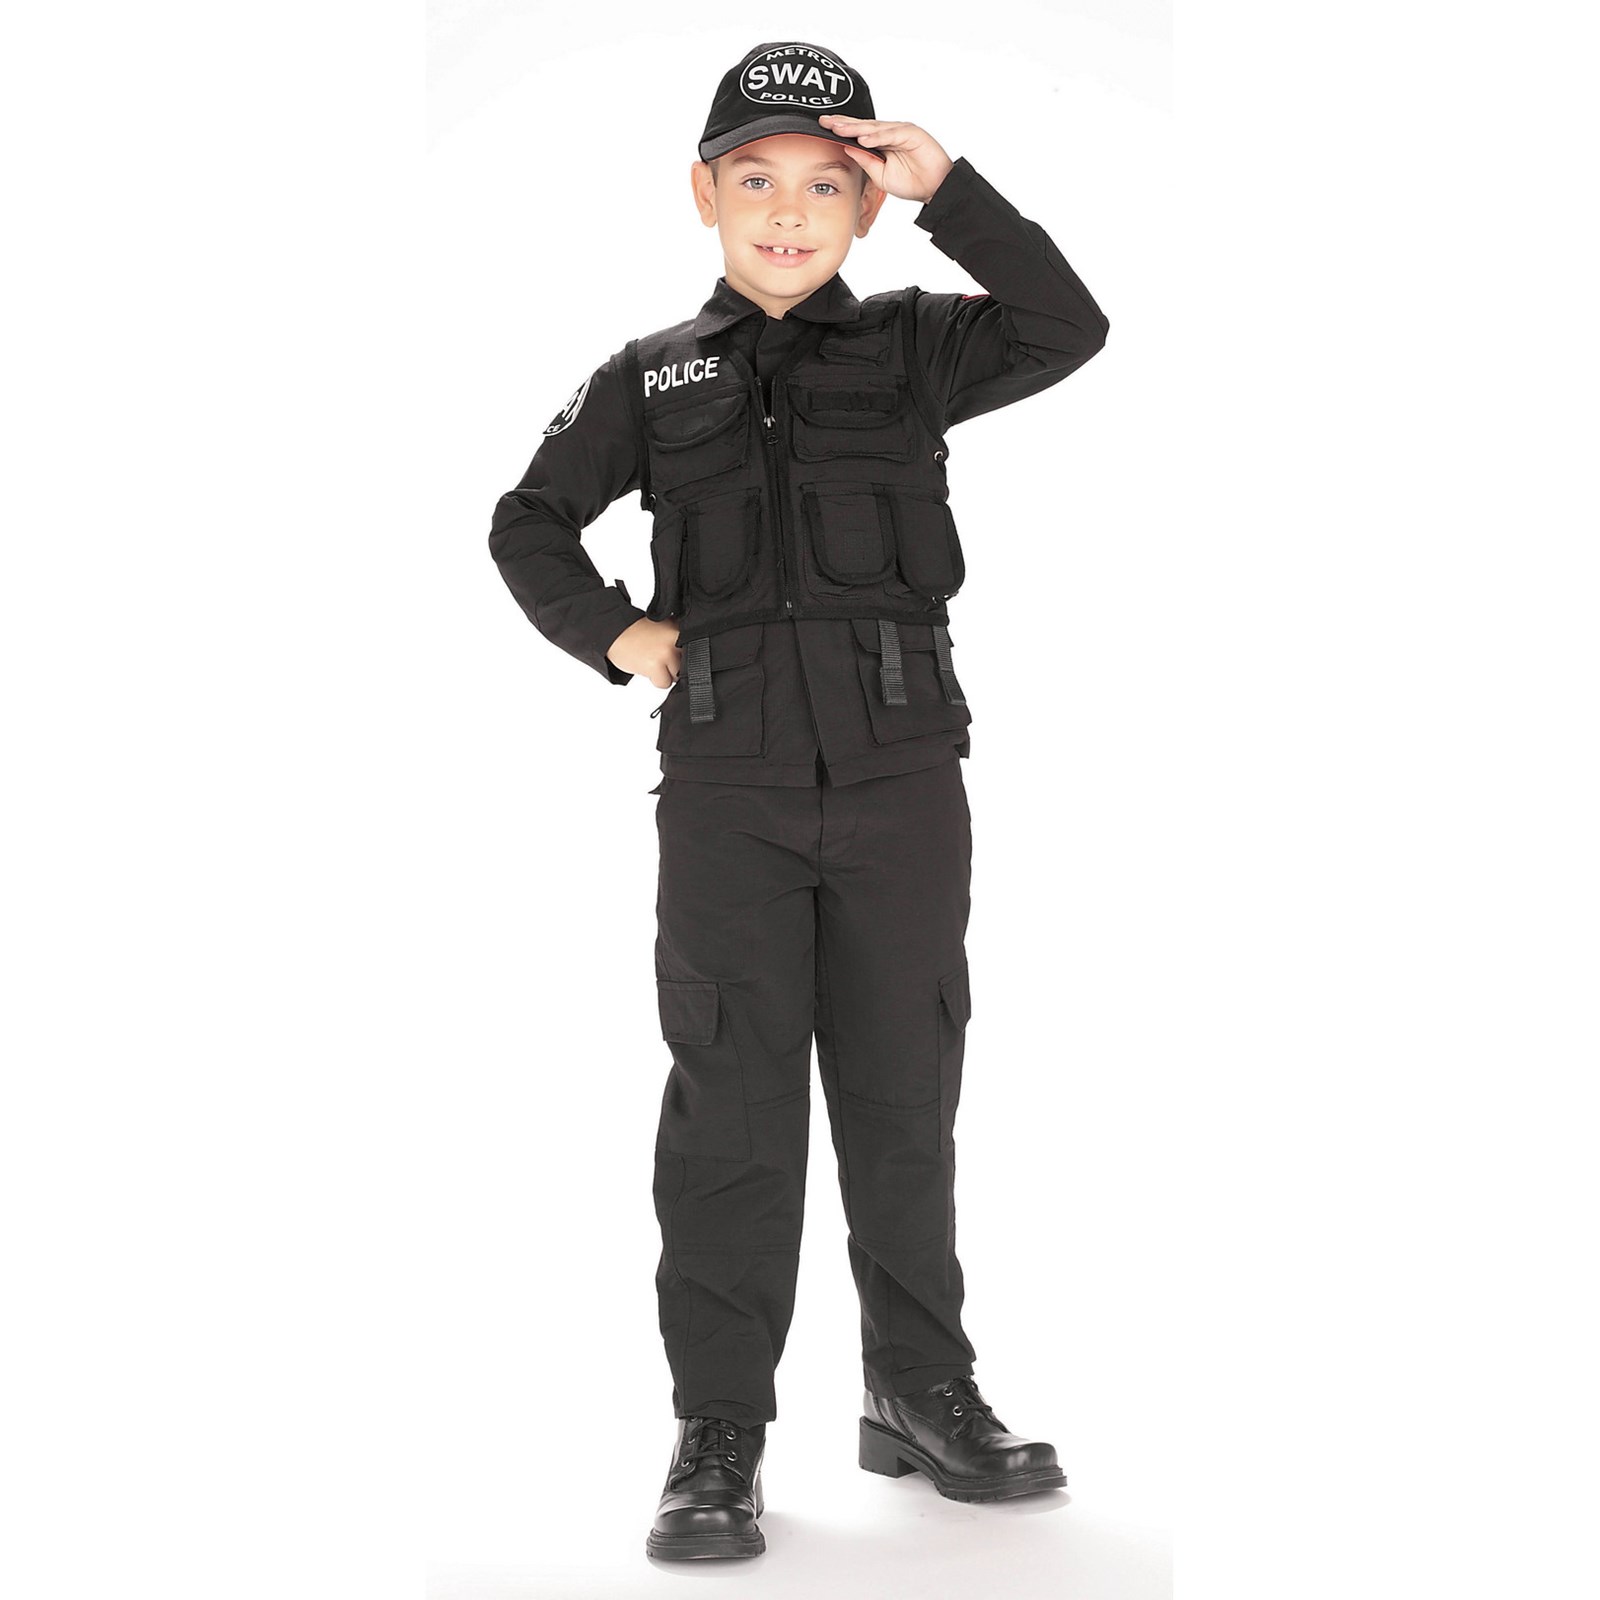 Bé trai muốn trở thành thành viên đội đặc nhiệm SWAT tham gia vào các nhiệm vụ giải cứu khó nhằn